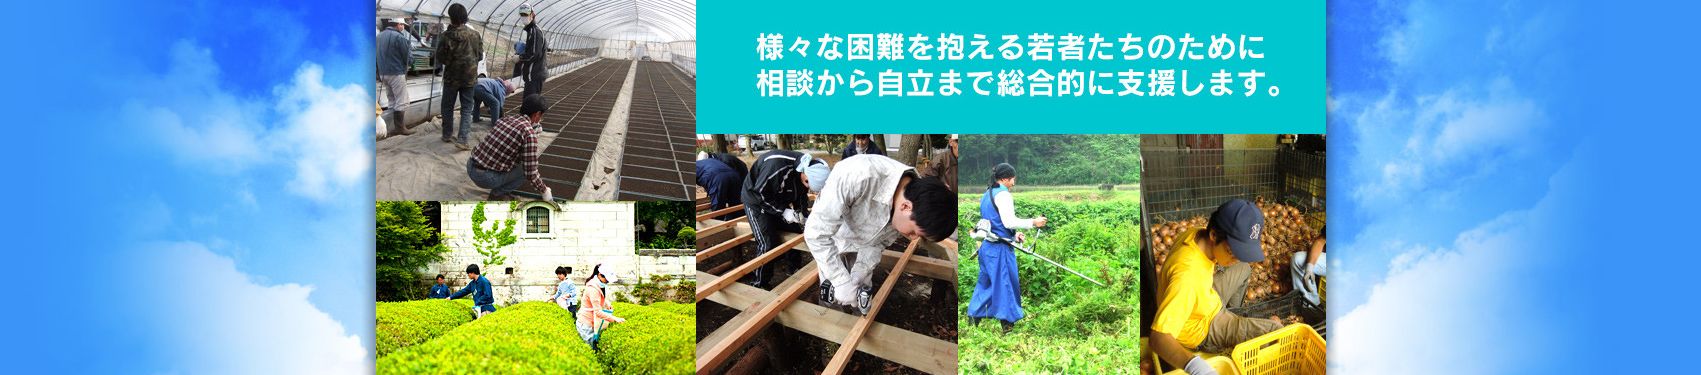 栃木県若年者支援機構のメインビジュアル画像